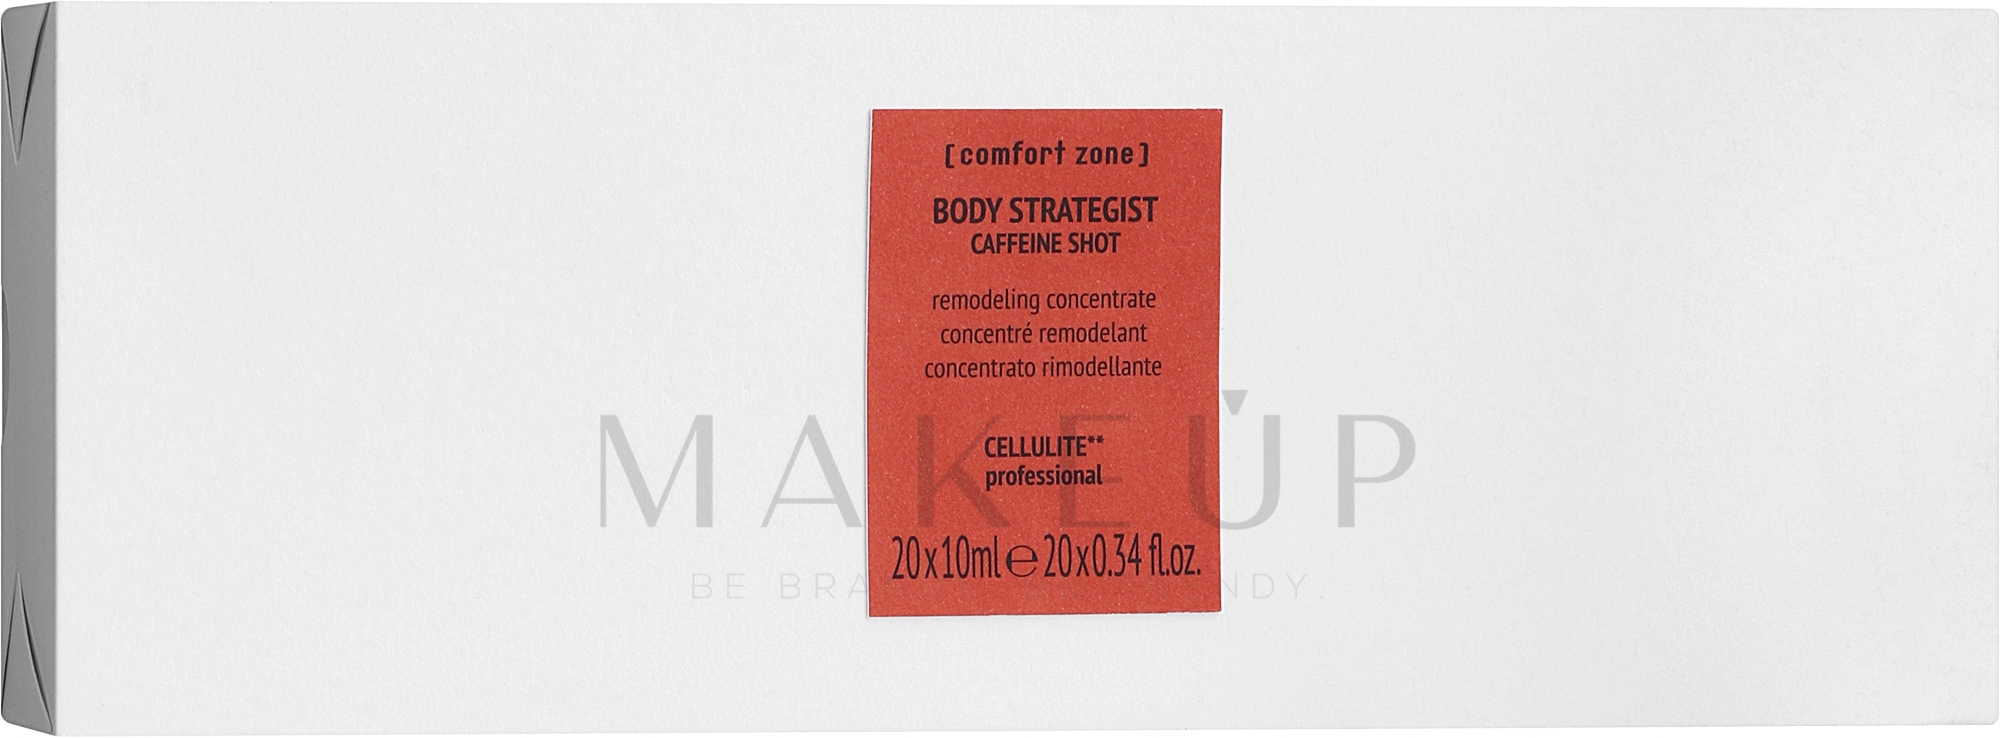 Konzentrat gegen Cellulite - Comfort Zone Body Strategist Caffeine Shot — Bild 20 x 10 ml